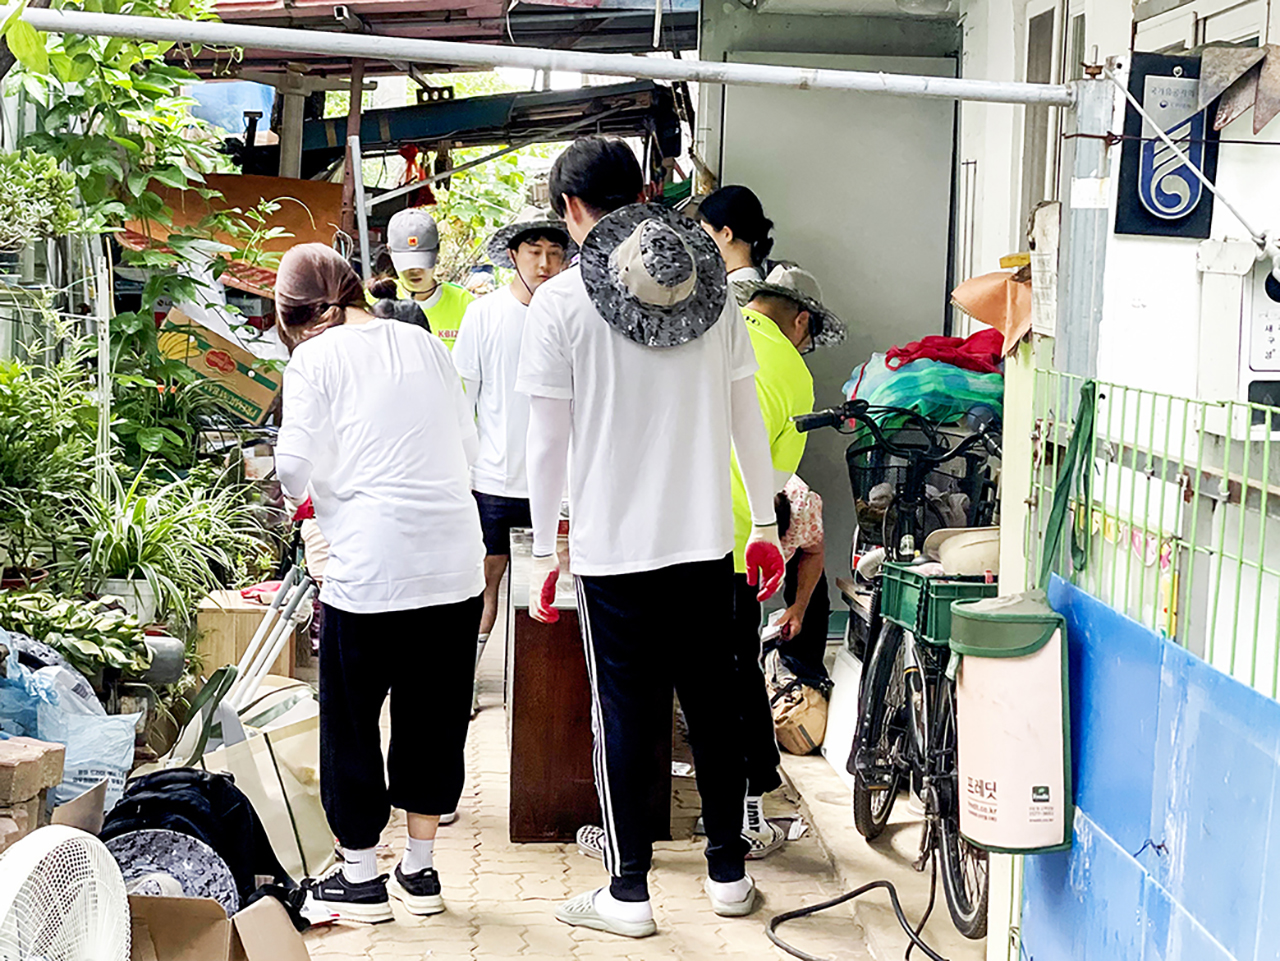 중소기업사랑나눔재단의 중소기업연합봉사단은 지난 7월 집중호우로 피해를 입은 6.25 참전용사 가정을 방문해 피해 복구를 위한 봉사활동을 진행했다.